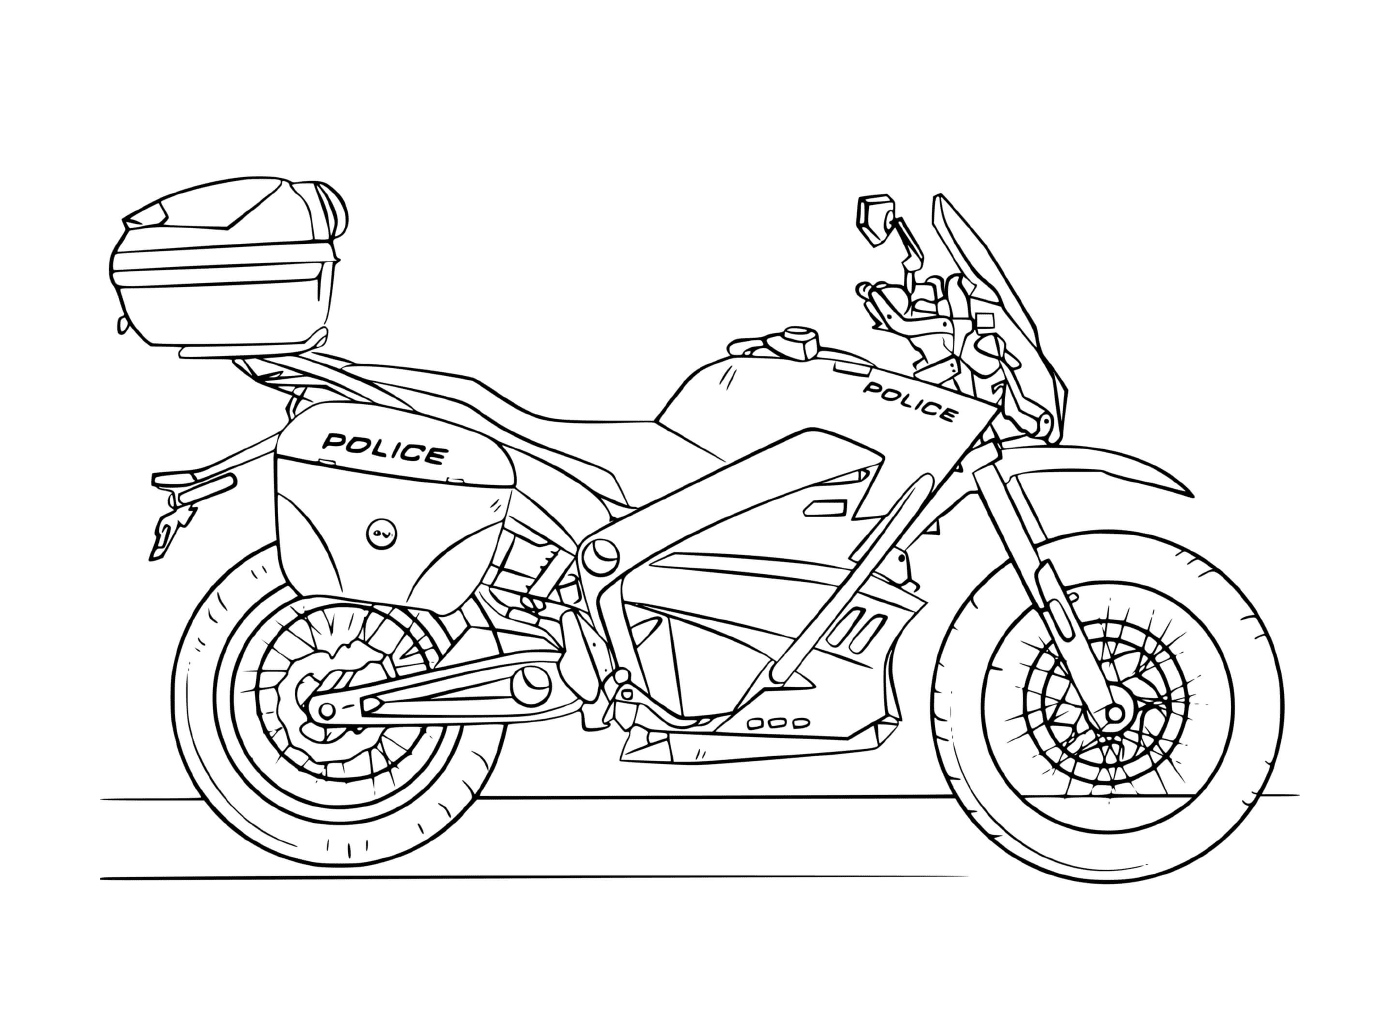  Мотоцикл полиции Мото 